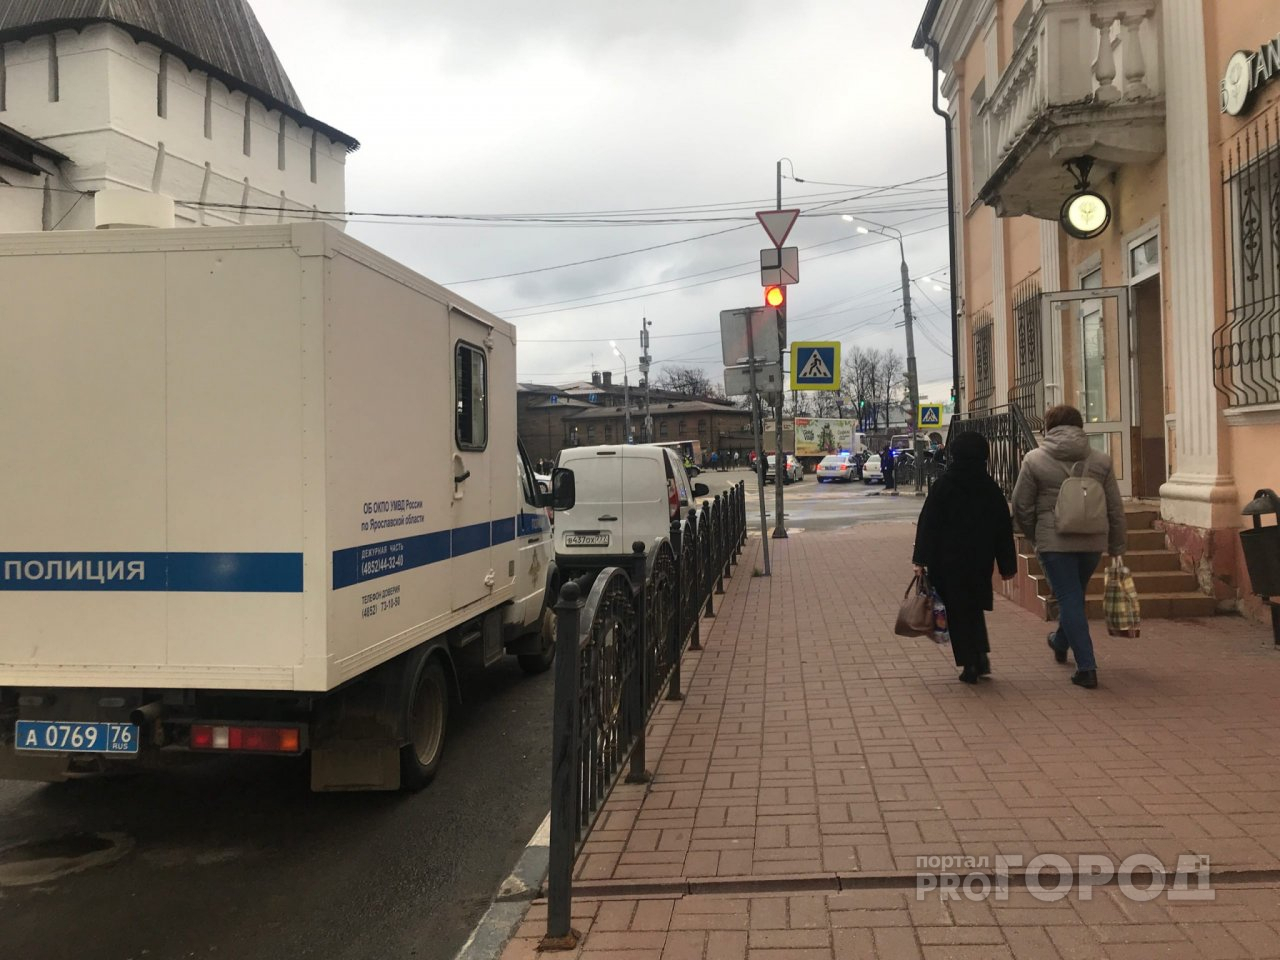 Дело о госзакупках и иностранцах: в Ярославле чиновника подозревают в хищении миллиона из бюджета